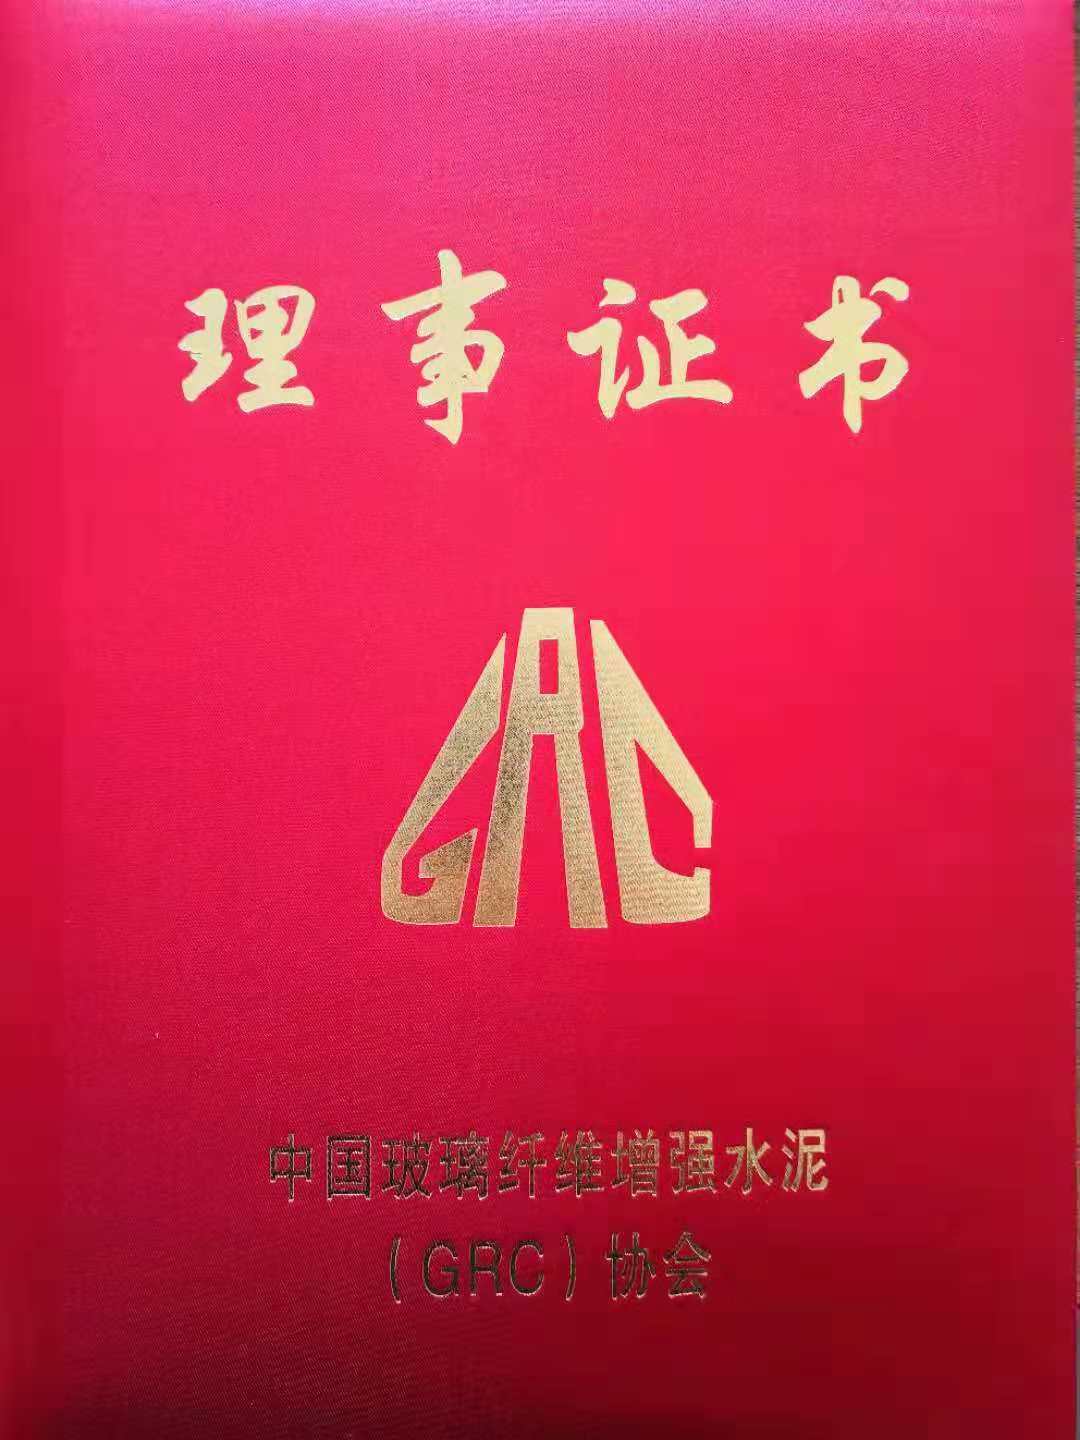 中国GRC协会颁发理事证书